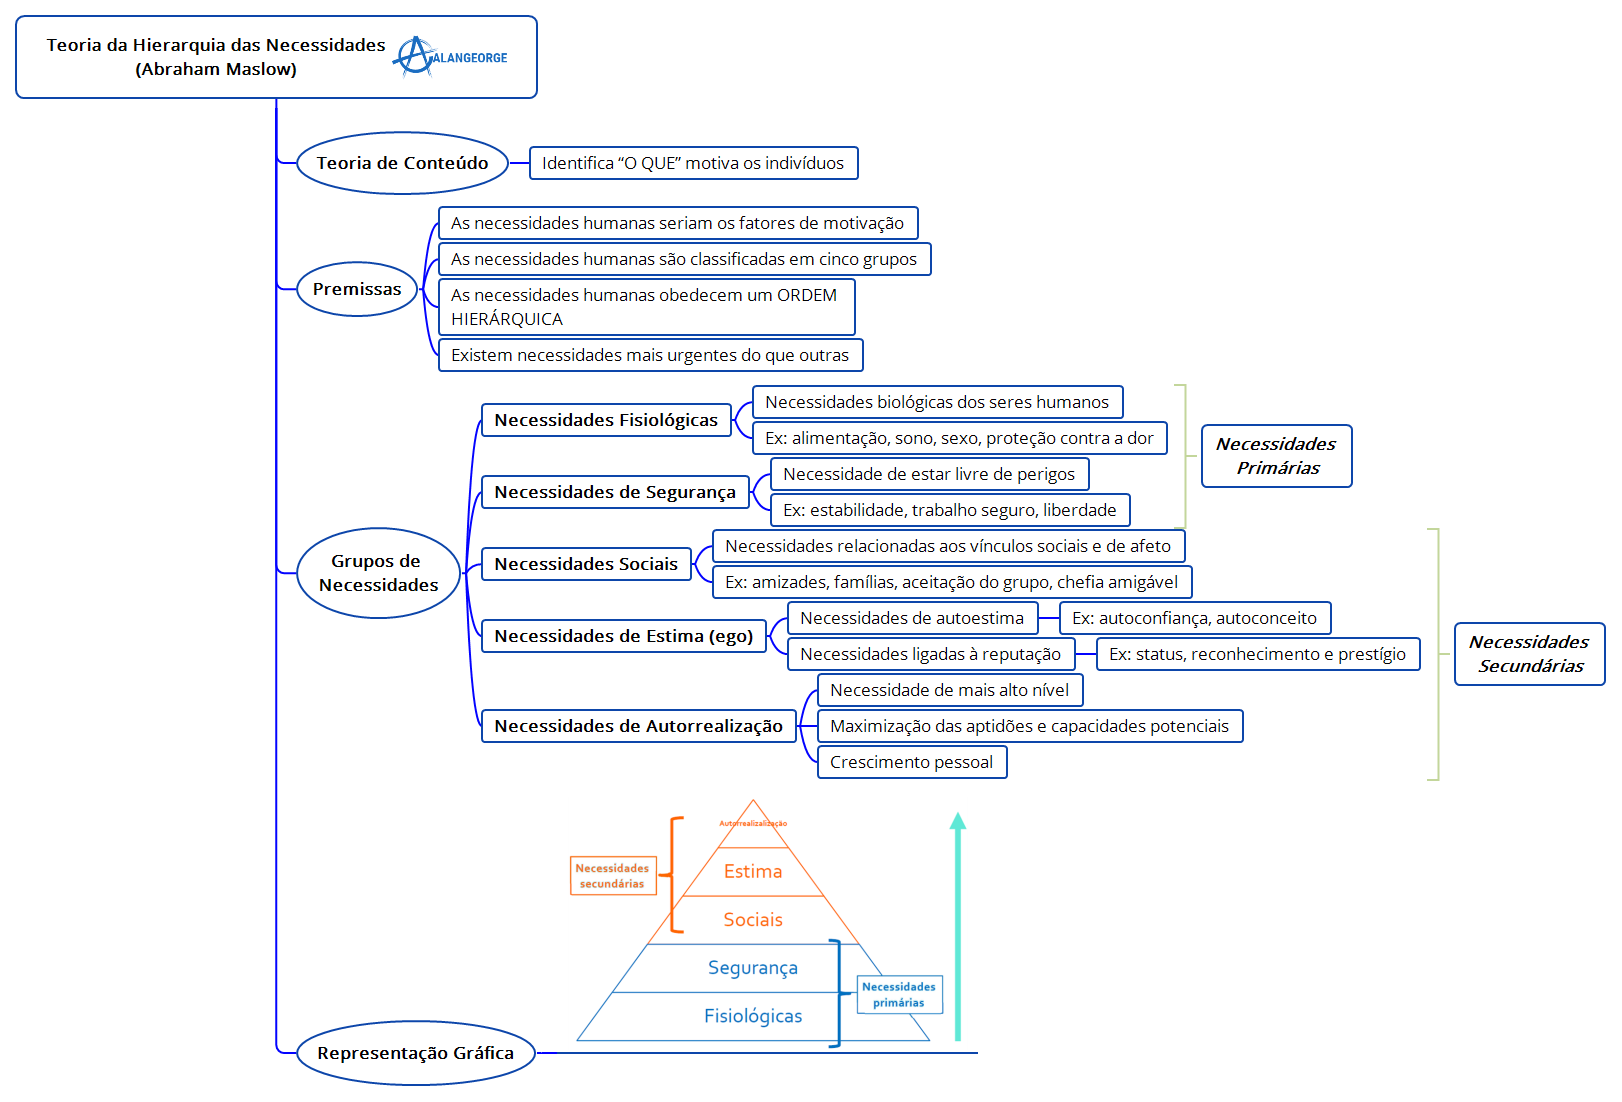 Mapa Mental - Teoria da Hierarquia das Necessidades (Abraham Maslow) -  Administração